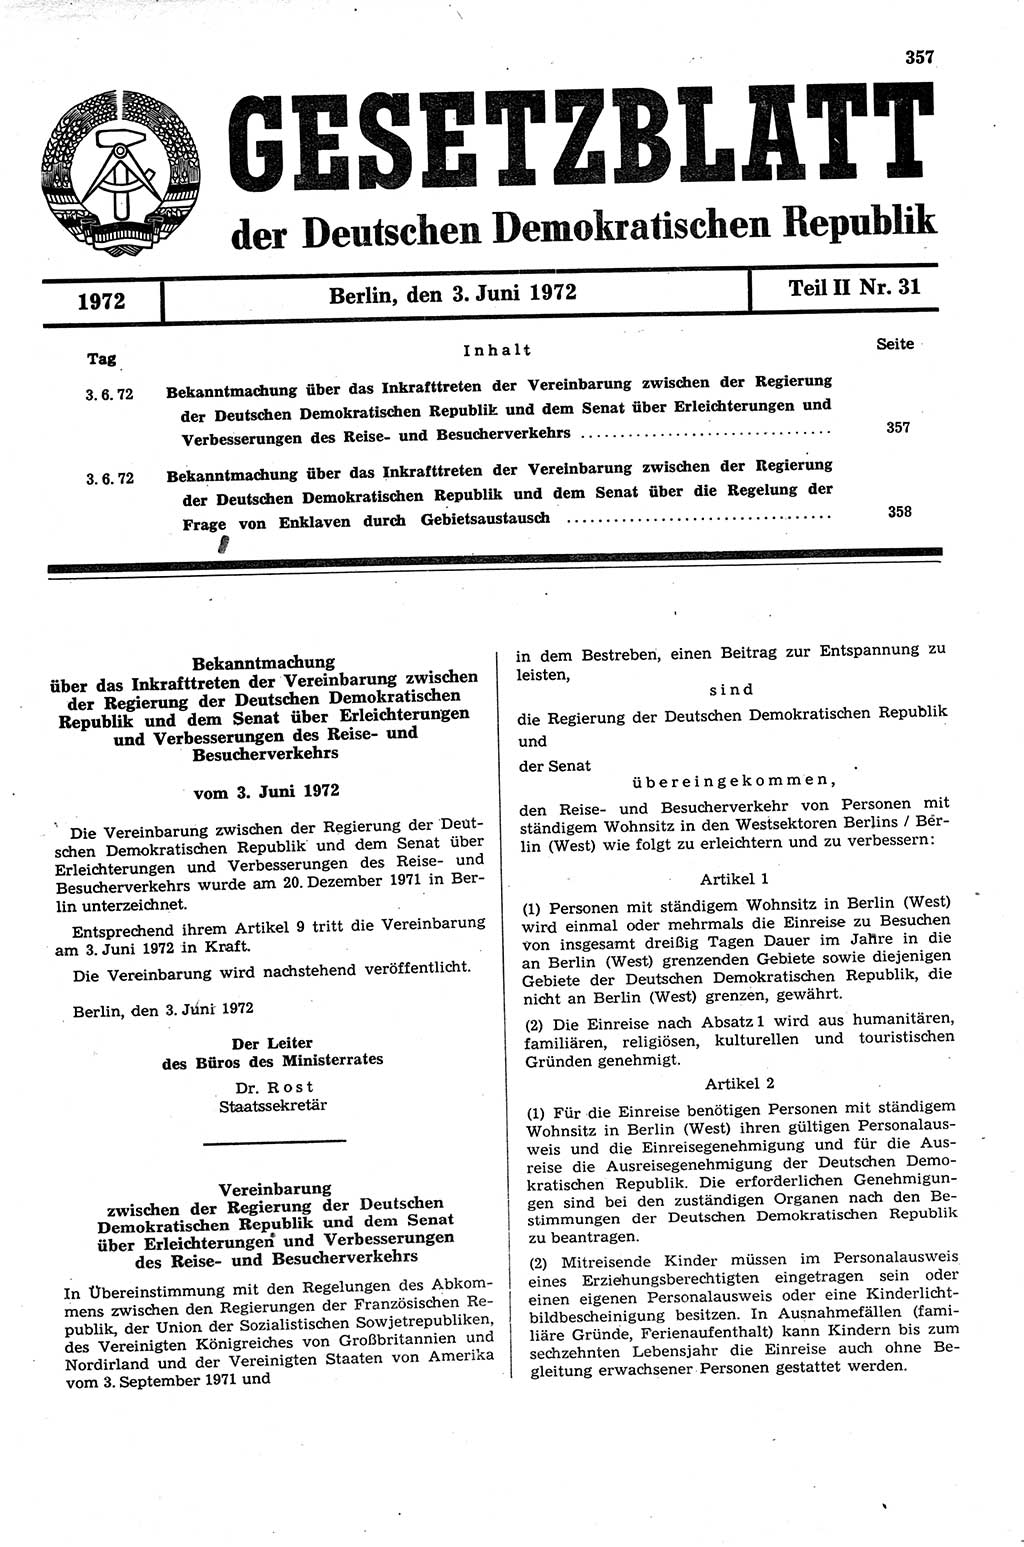 Gesetzblatt (GBl.) der Deutschen Demokratischen Republik (DDR) Teil ⅠⅠ 1972, Seite 357 (GBl. DDR ⅠⅠ 1972, S. 357)